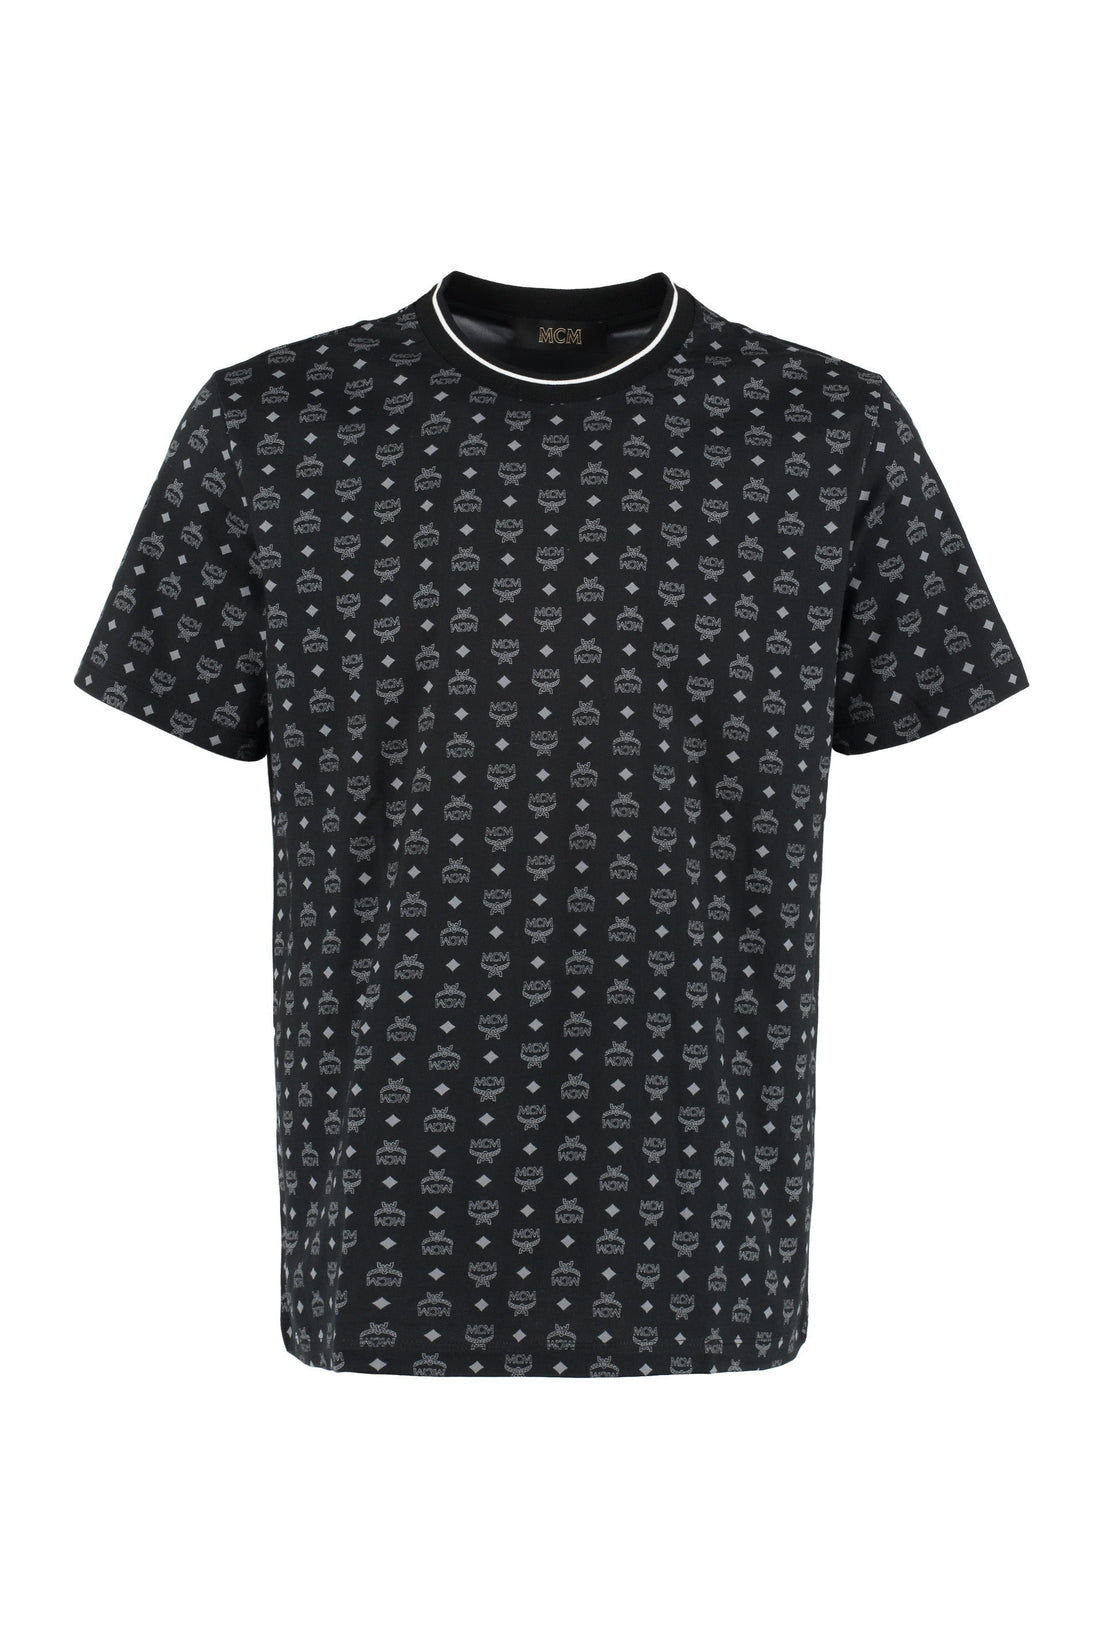 MCM-OUTLET-SALE-All-over logo cotton t-shirt-ARCHIVIST